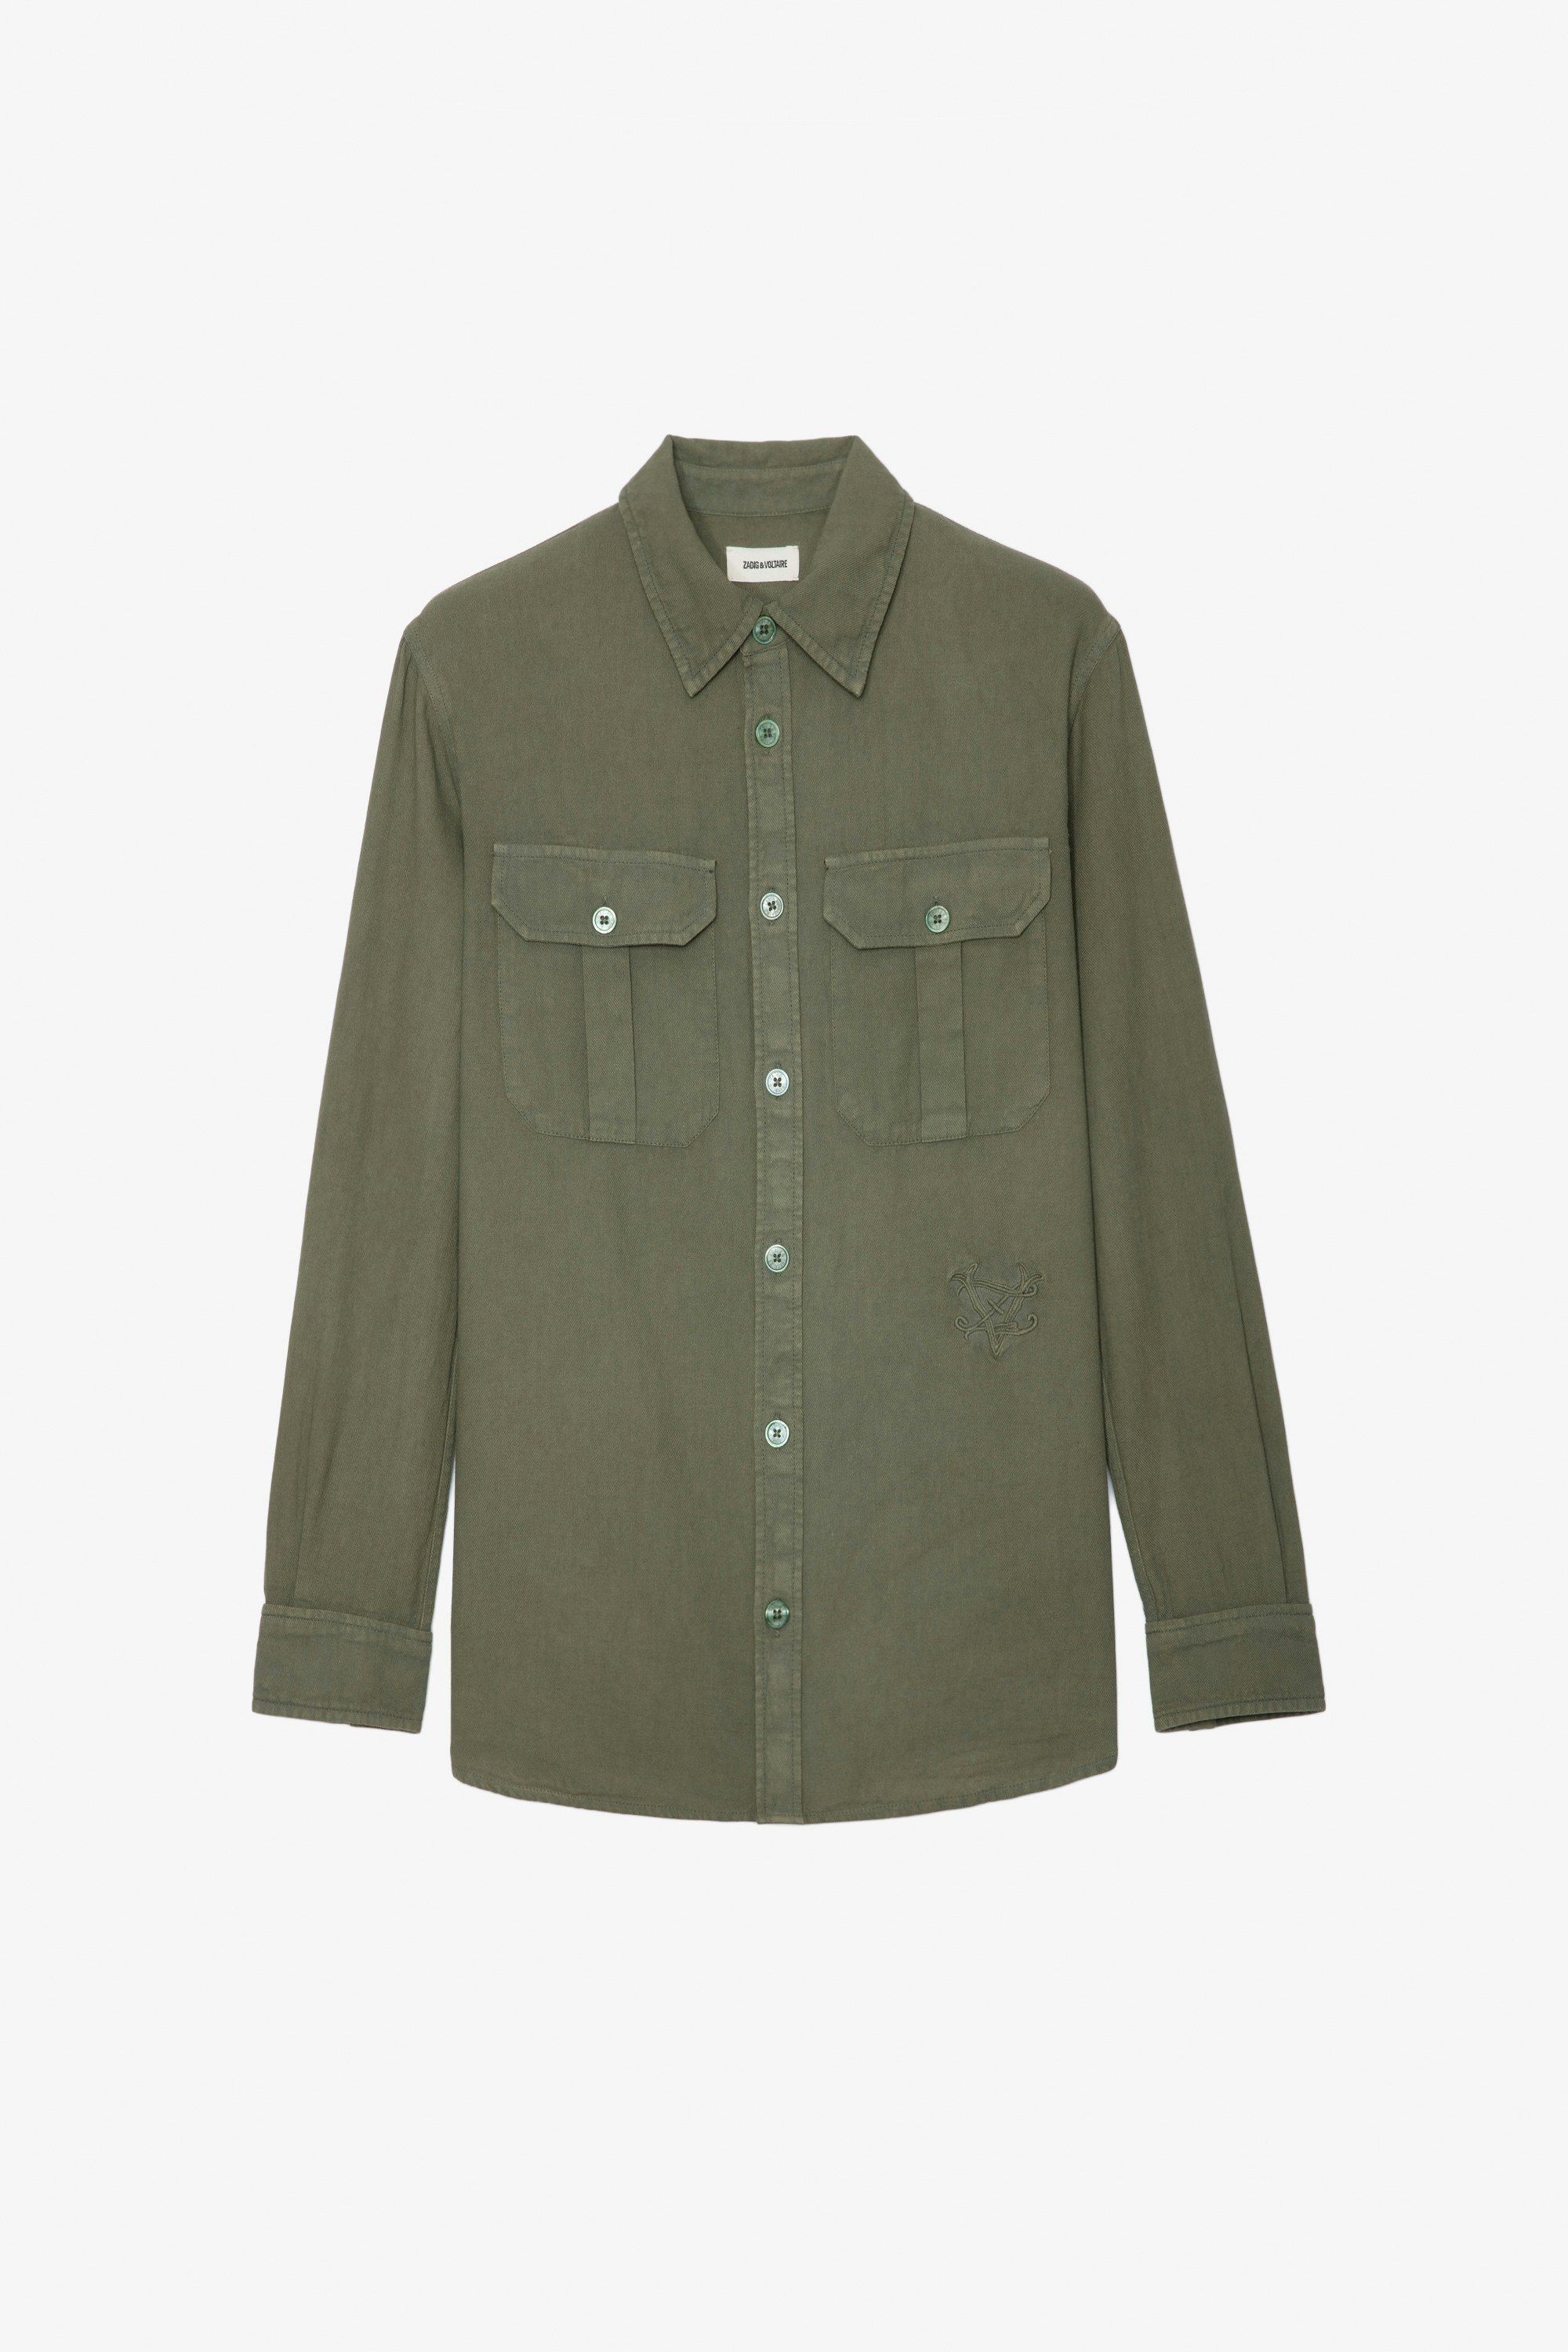 Camisa Teros - Camisa verde de algodón con cierre con botones, bolsillos y bordado ZV.